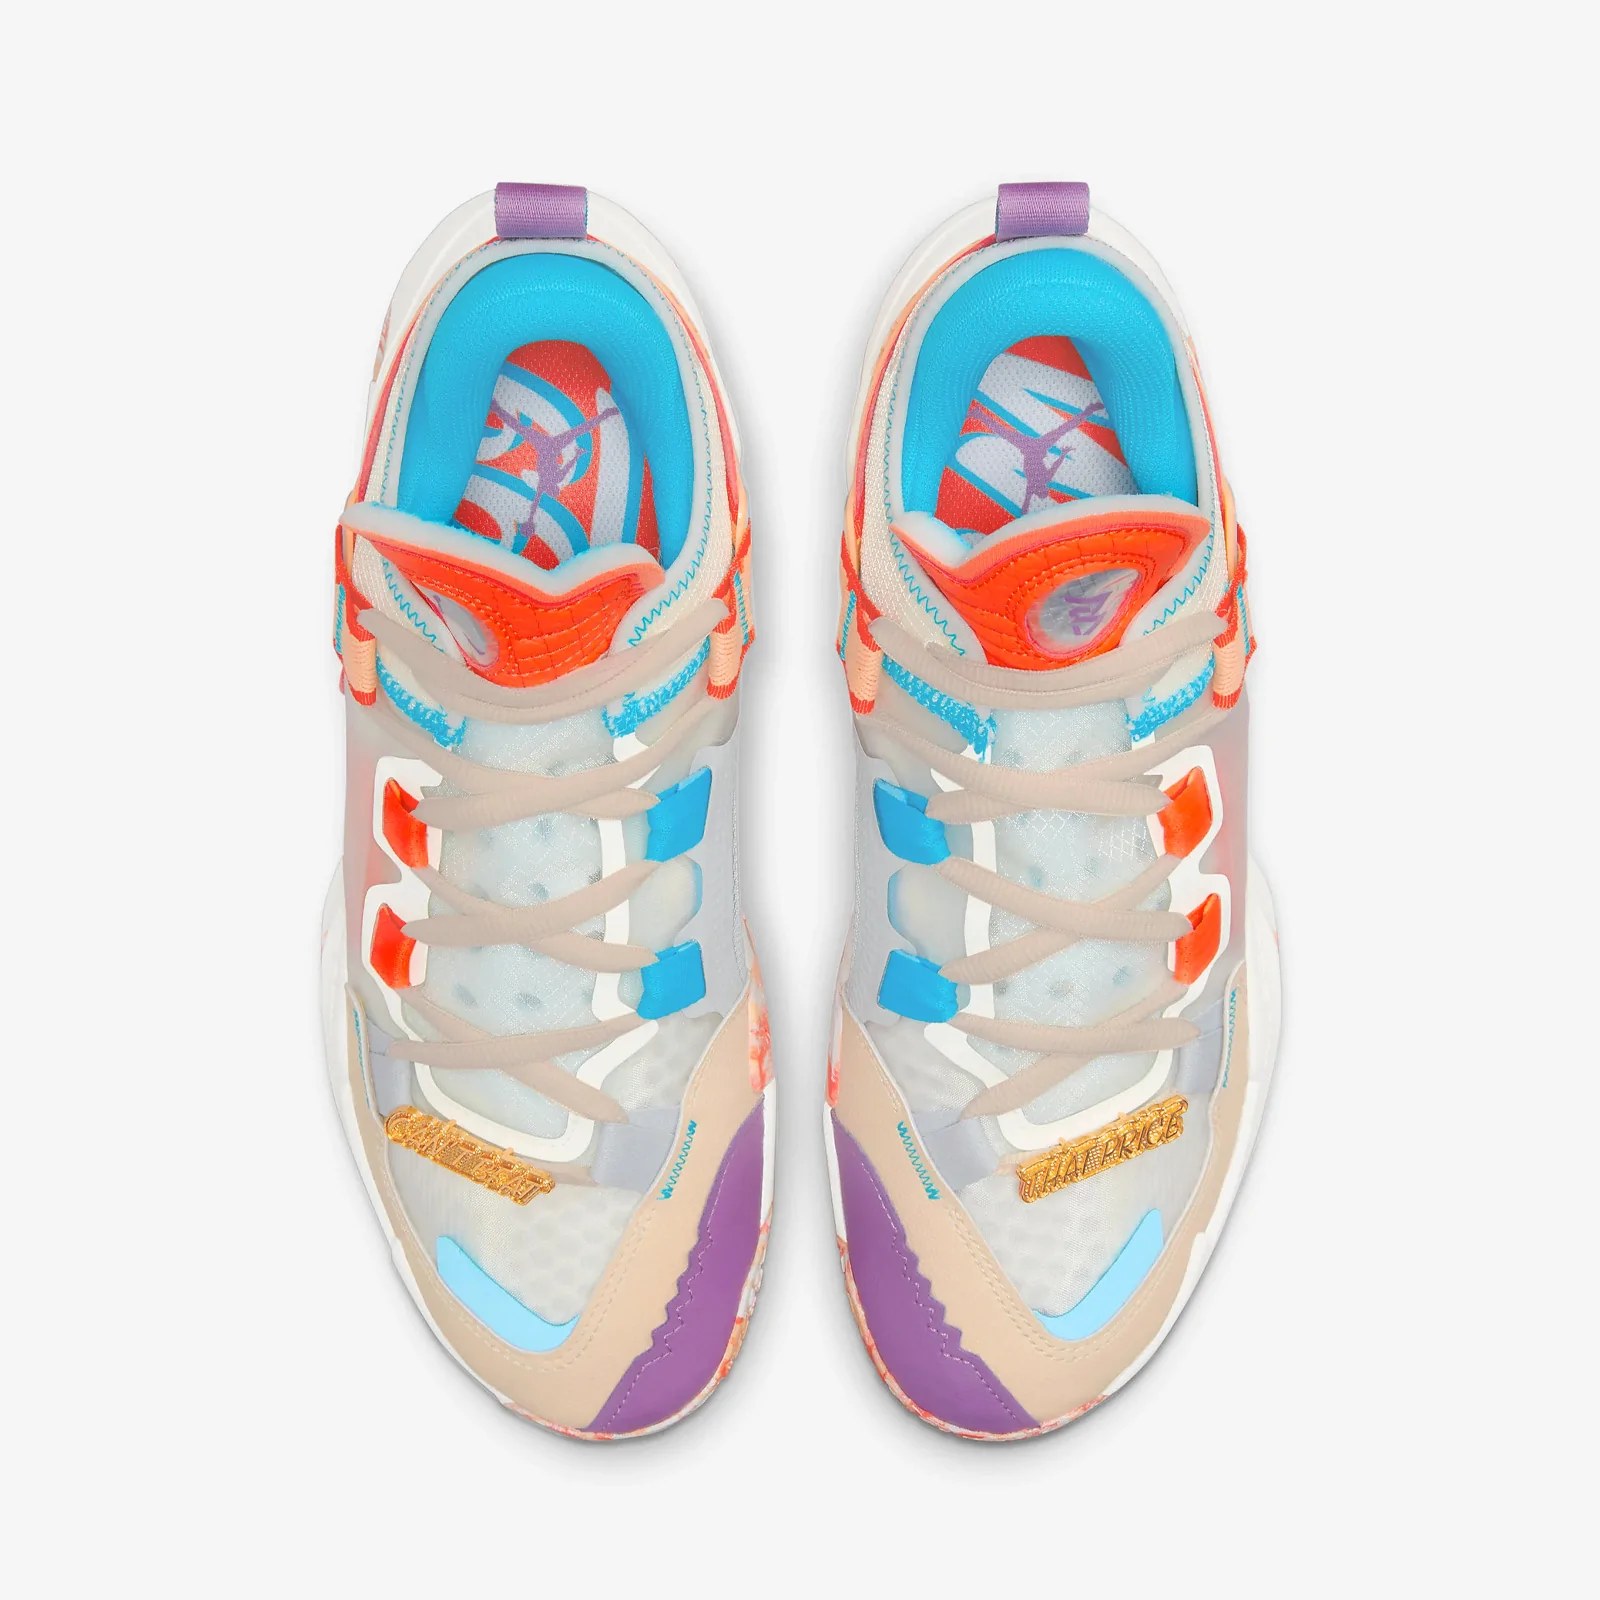 Giày Bóng Rổ Nike - Jordan “Why Not?” Zer0.5 